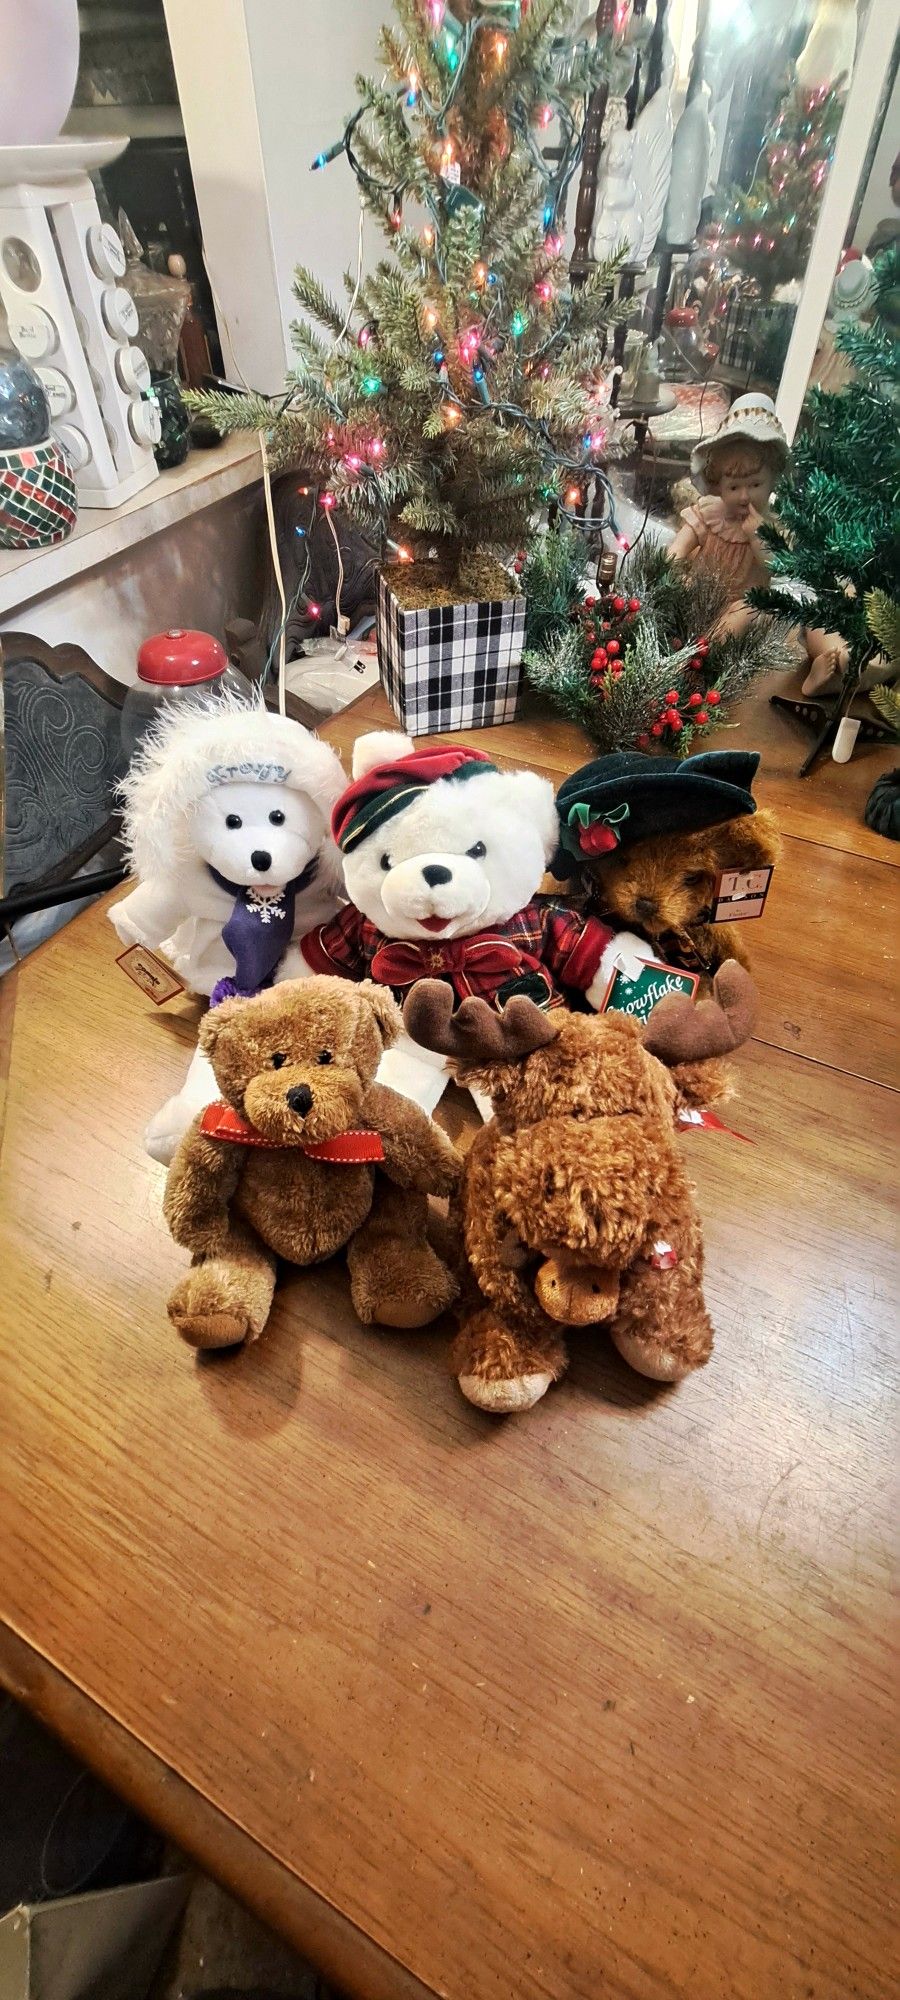 Christmas Stuffed Animals Your Choice $3 Each